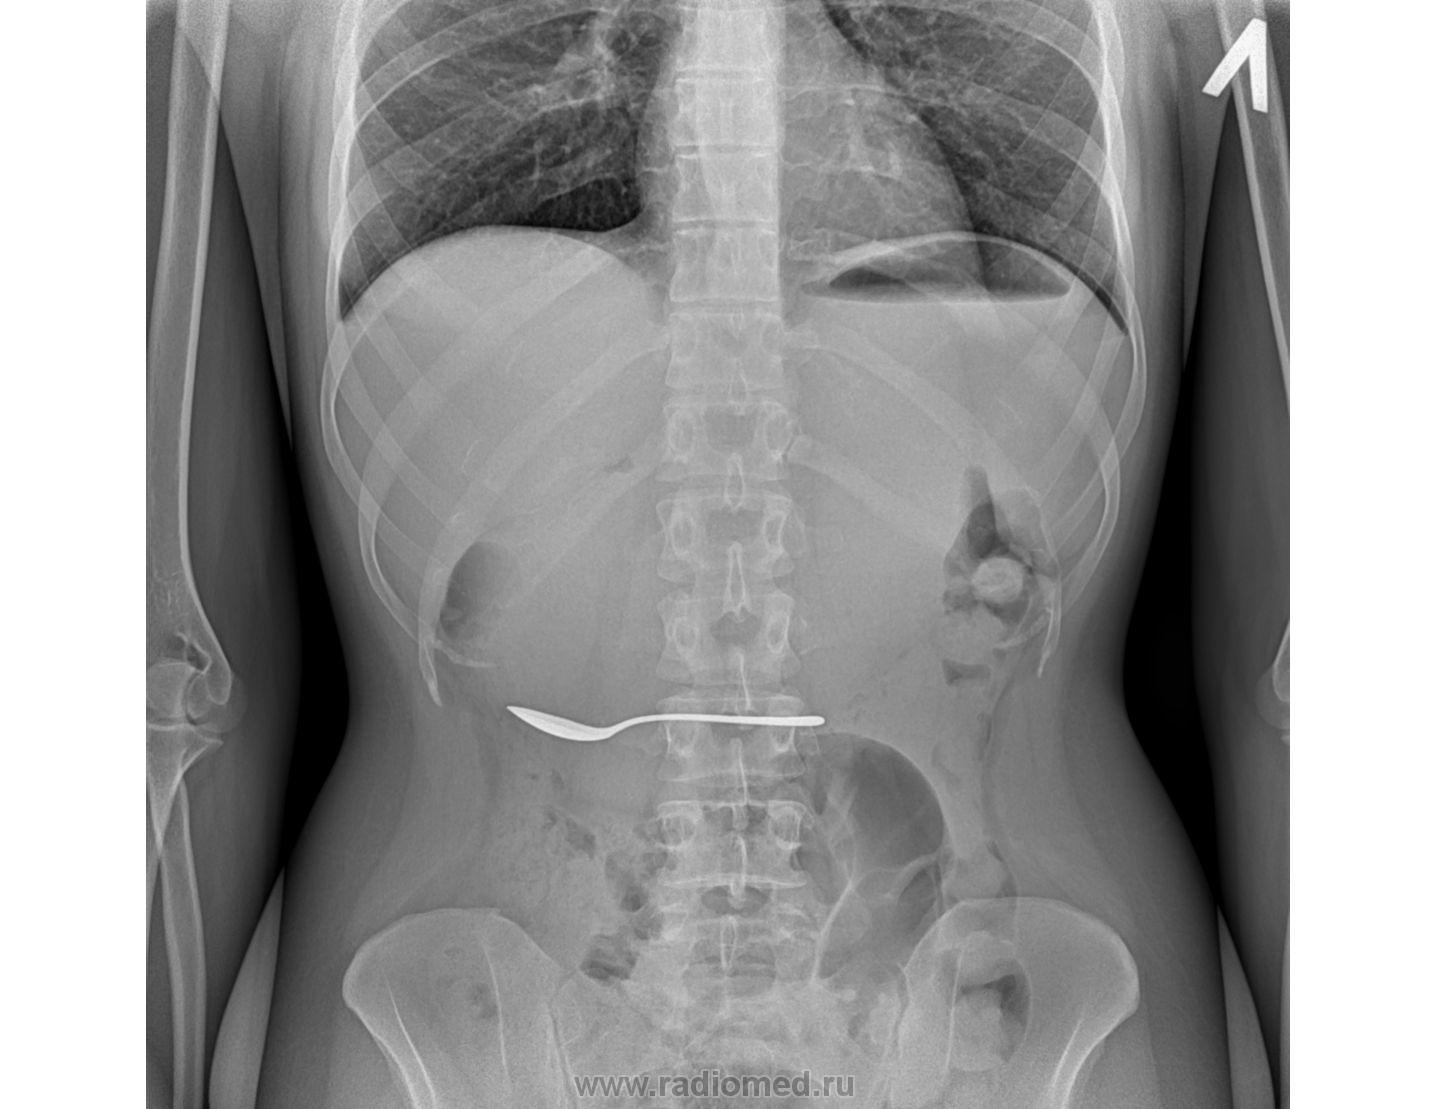 Инородное тело брюшной полости после операции. Рентген брюшной полости инородное тело. Рентгенограмма брюшной полости. Рентген брюшной полости снимки. Обзорная рентгенограмма живота.